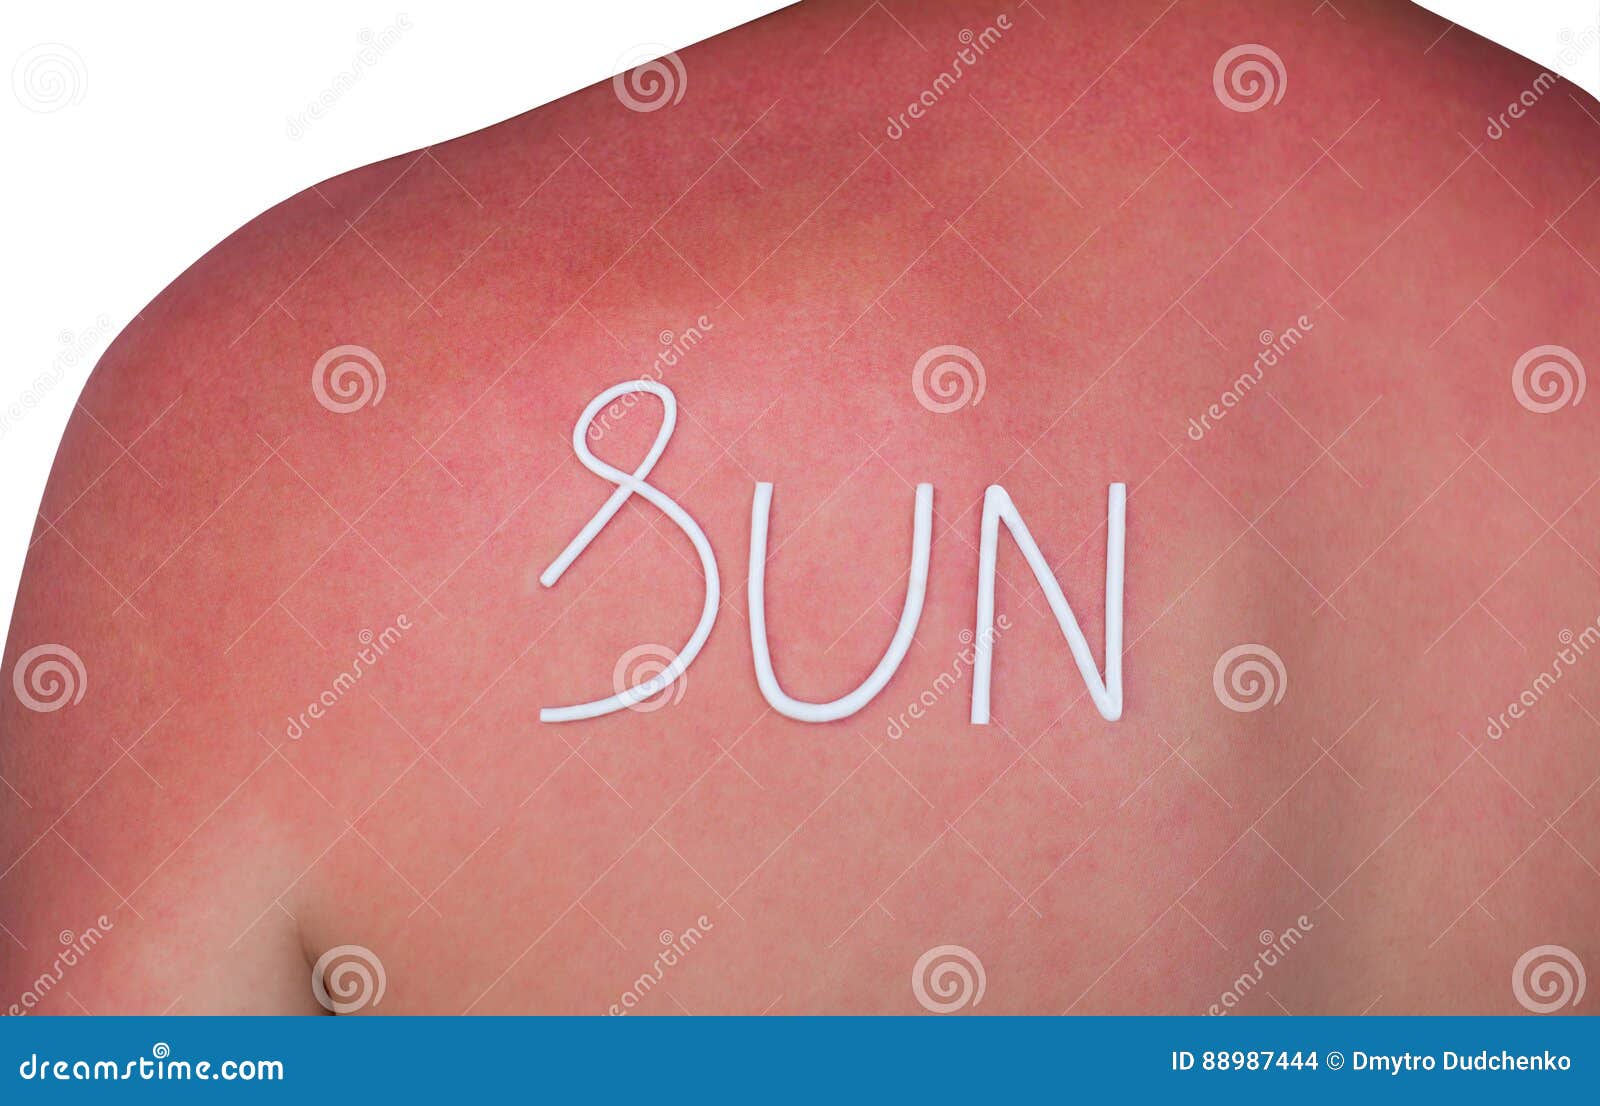 Mann Mit Geroteter Juckender Haut Nach Sonnenbrand Creme Auf Der Ruckseite Stockfoto Bild Von Creme Sonnenbrand 7444